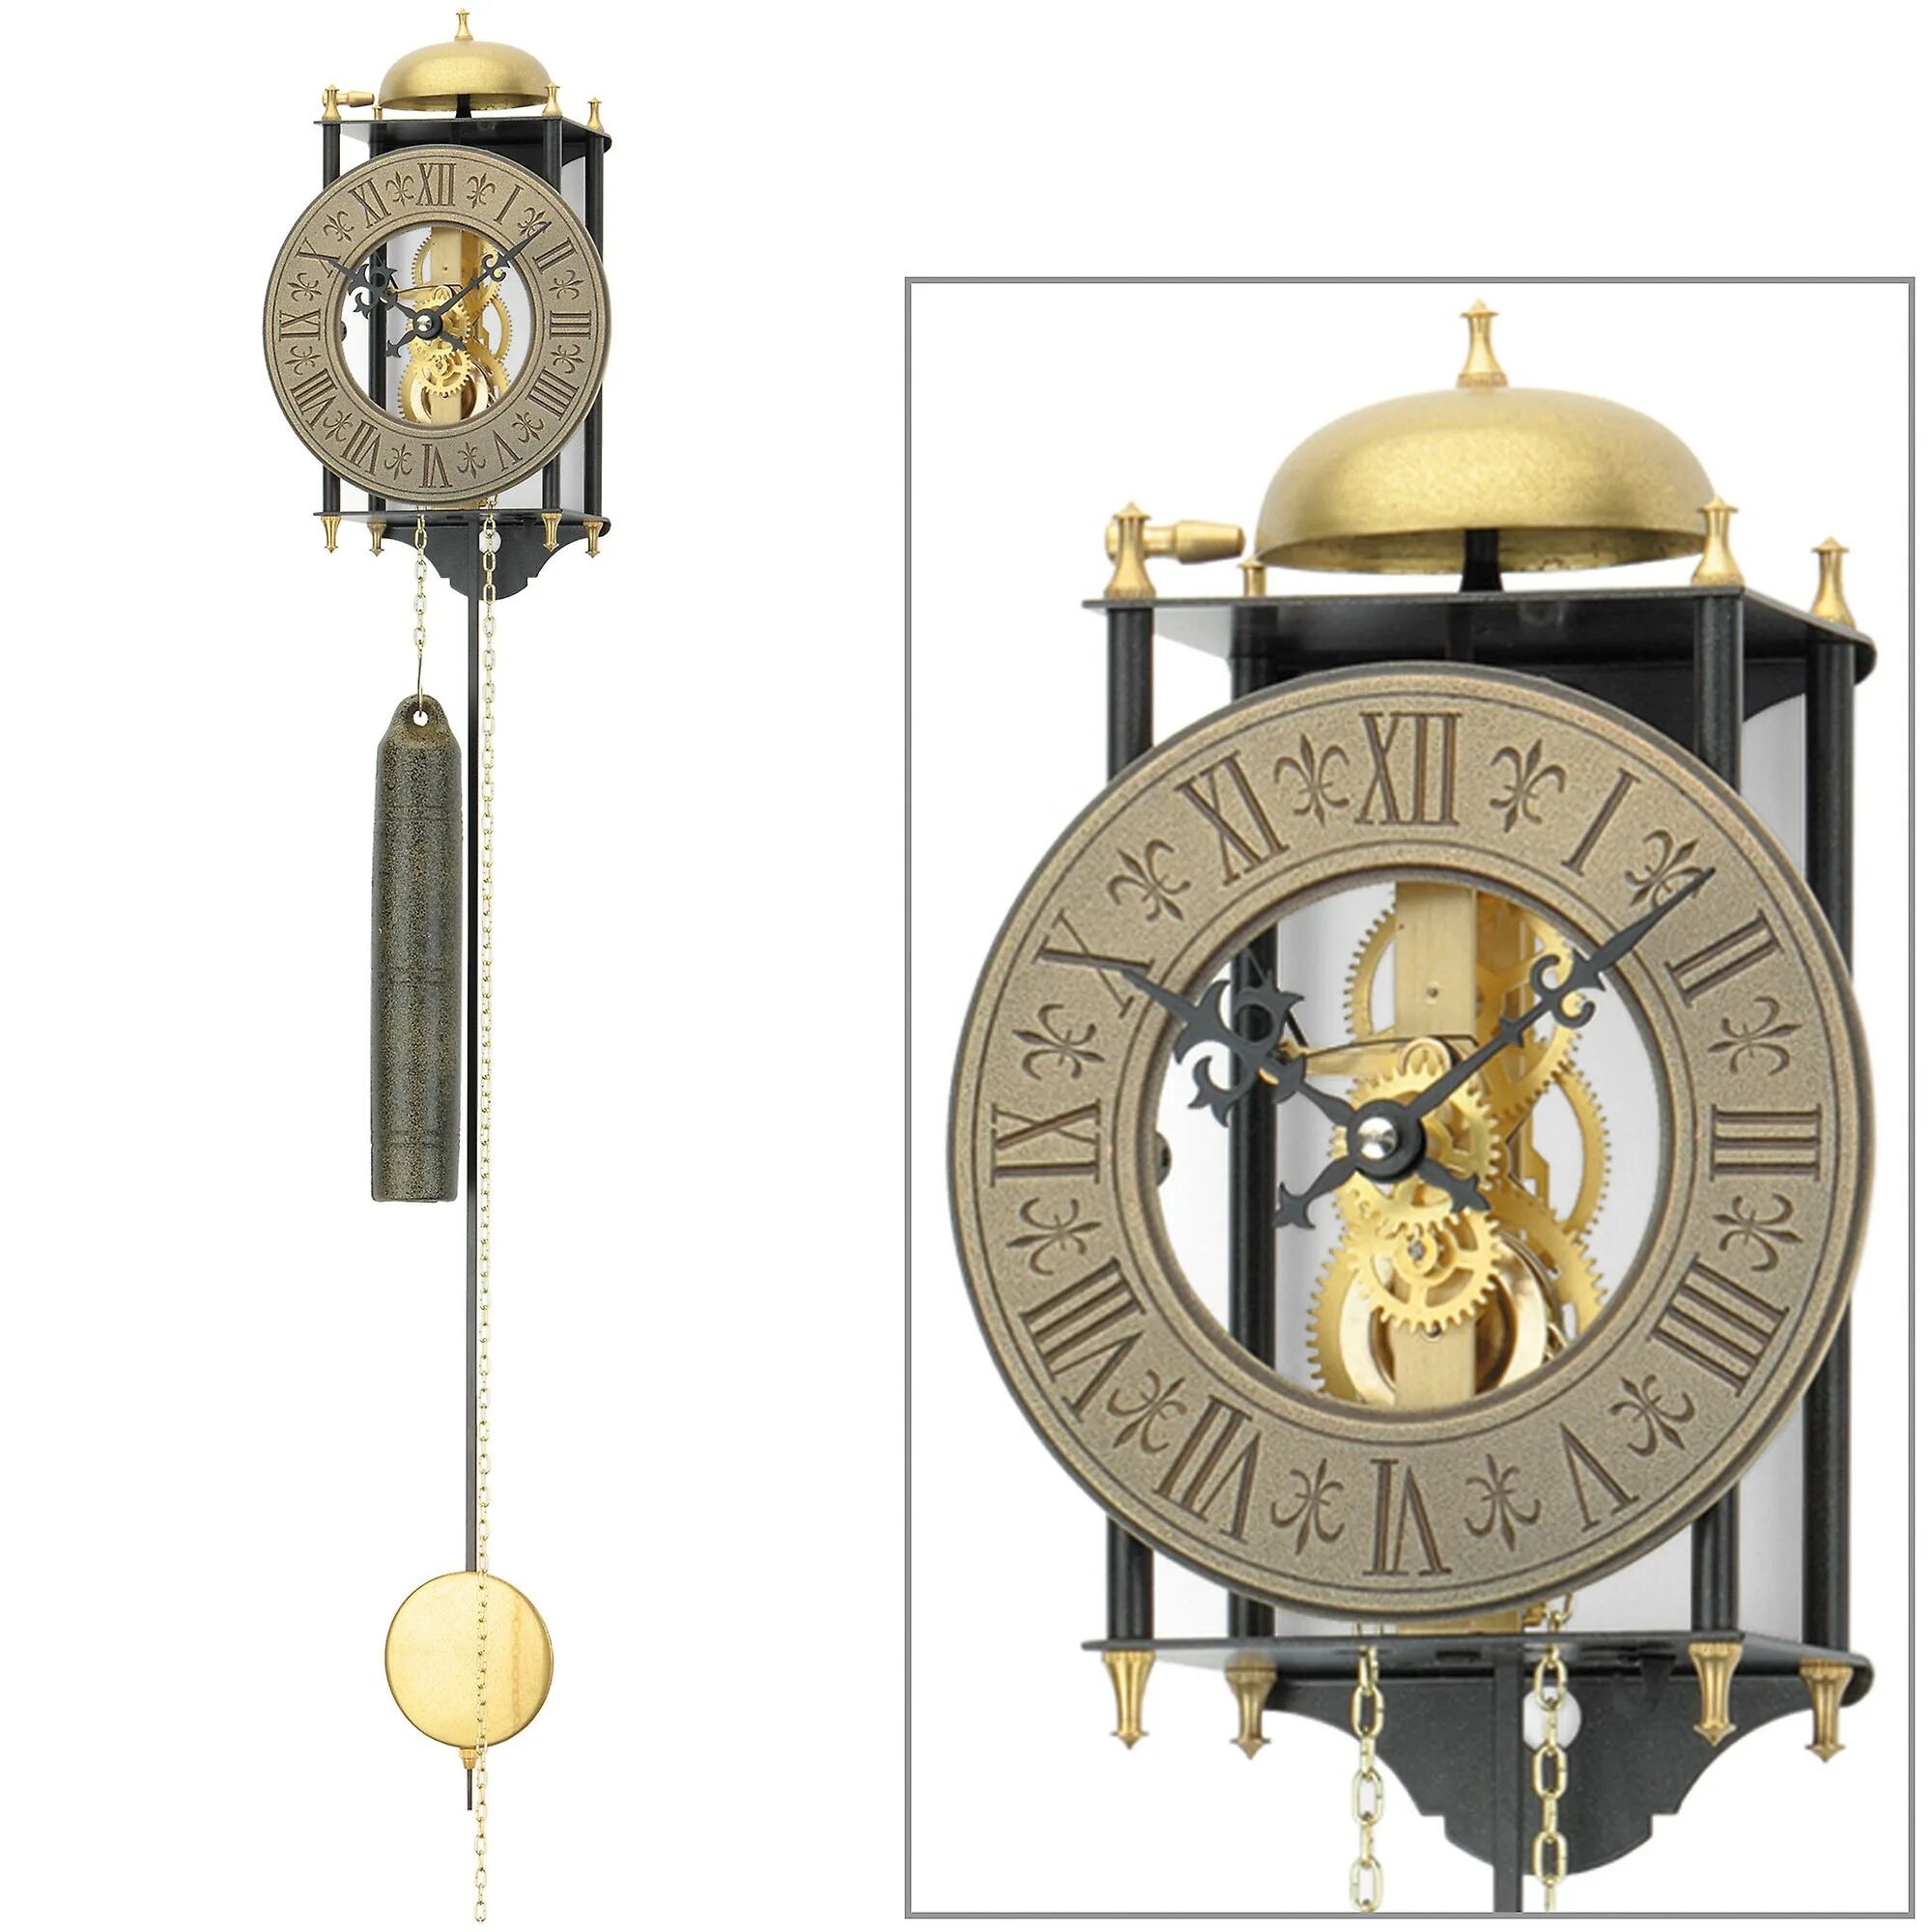 Часы настенные с маятником и гирями AMS 301. Часы 'скелетон' с маятником Hermle 70992-030711. Часы Гюйгенса с маятником.